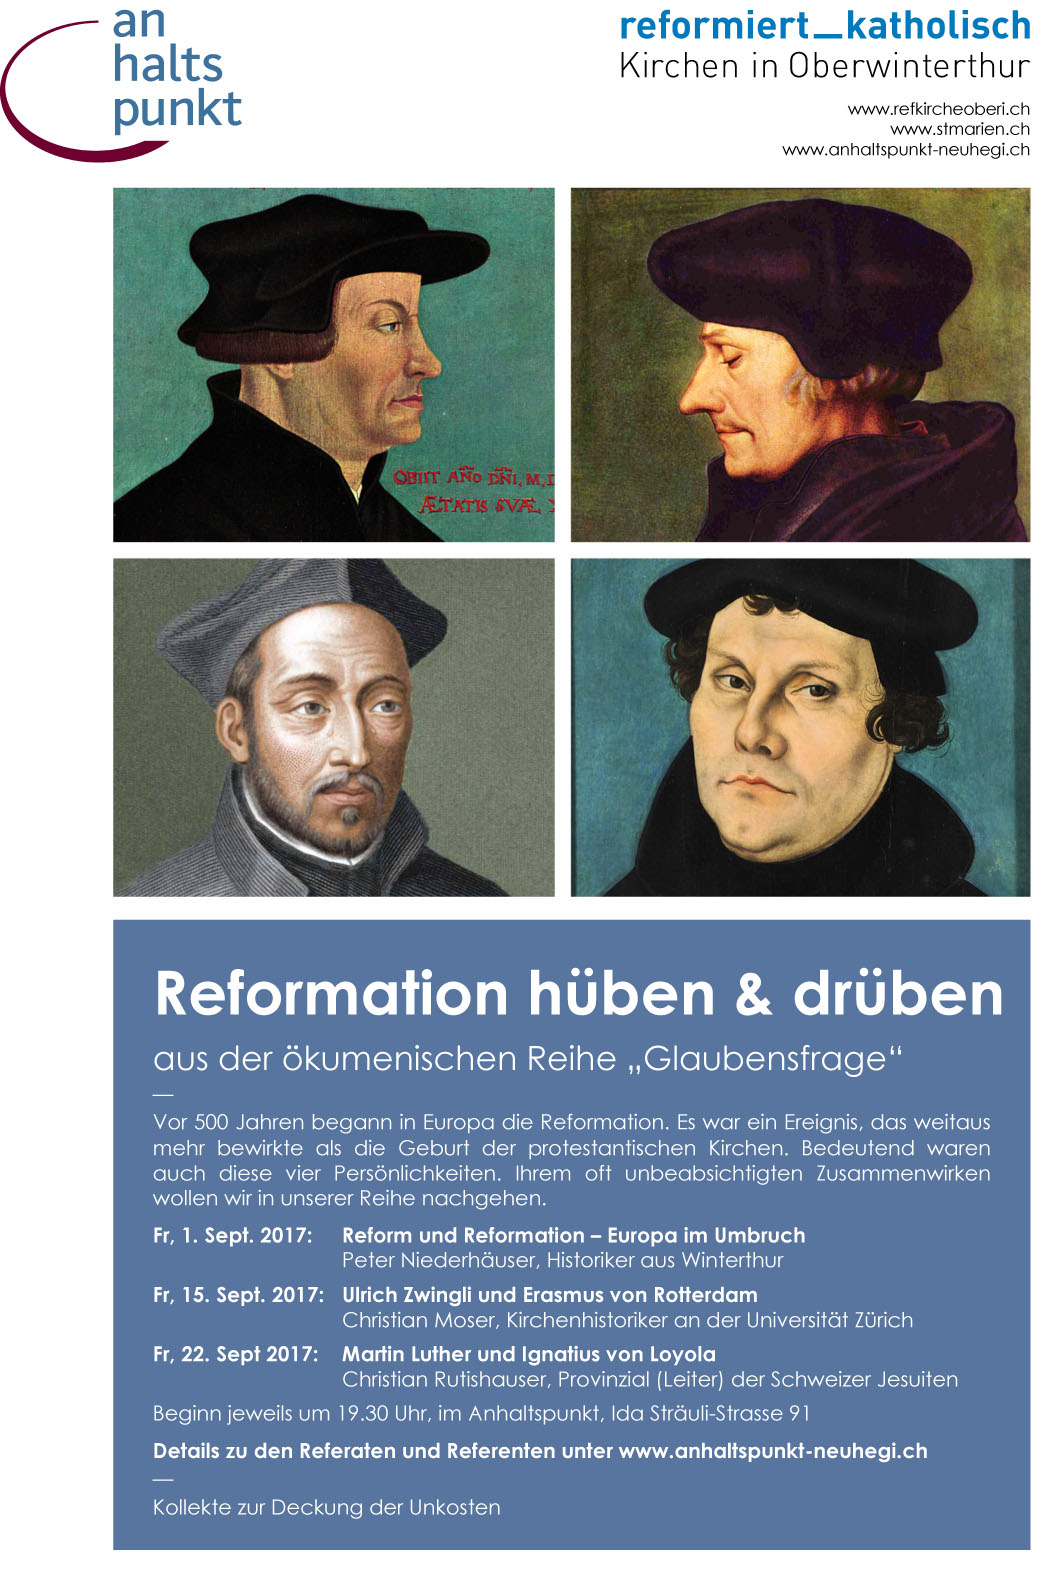 ahp Glaubensfrage Reformation 17